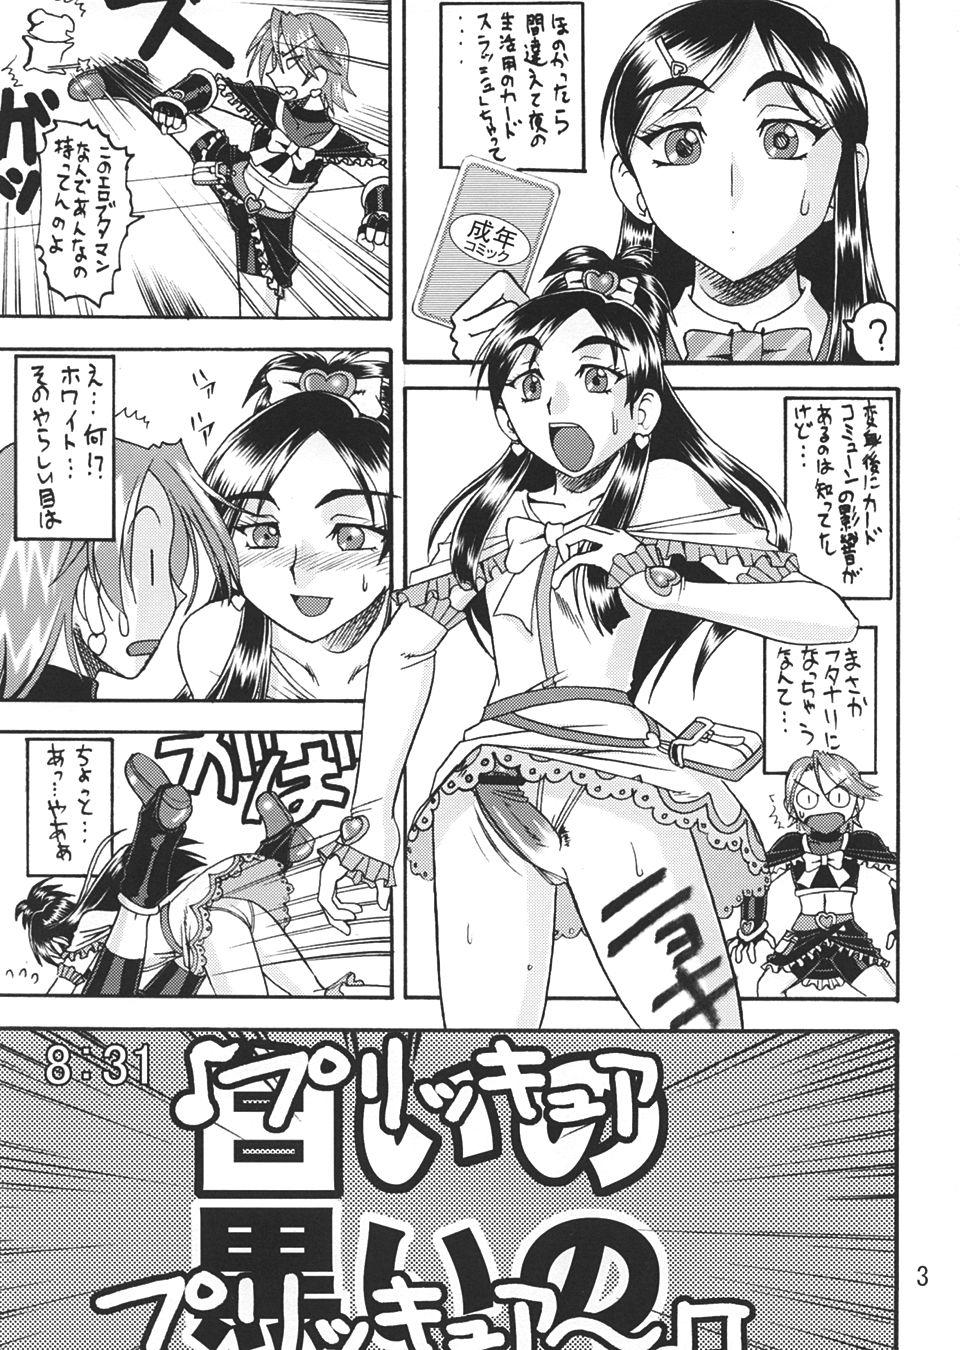 SEMEDAIN G WORKS vol.22 - Shiroi no Kuroi no 1